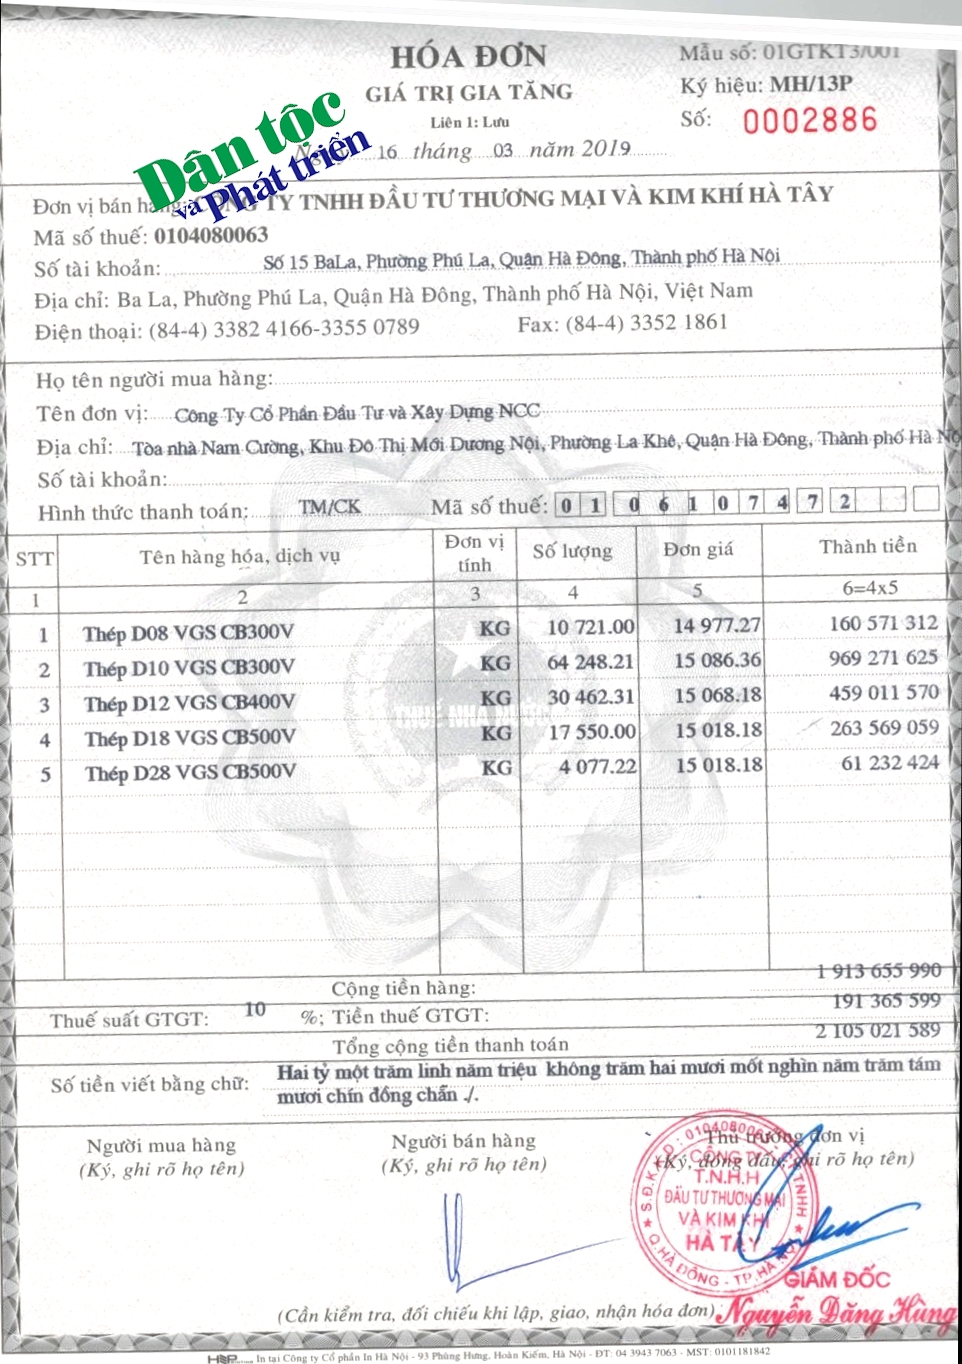 Một trong rất nhiều hóa đơn thanh toán giữa công ty của ông Nguyễn Đăng Hùng với Công ty Cổ phần Đầu tư và Xây dựng NCC